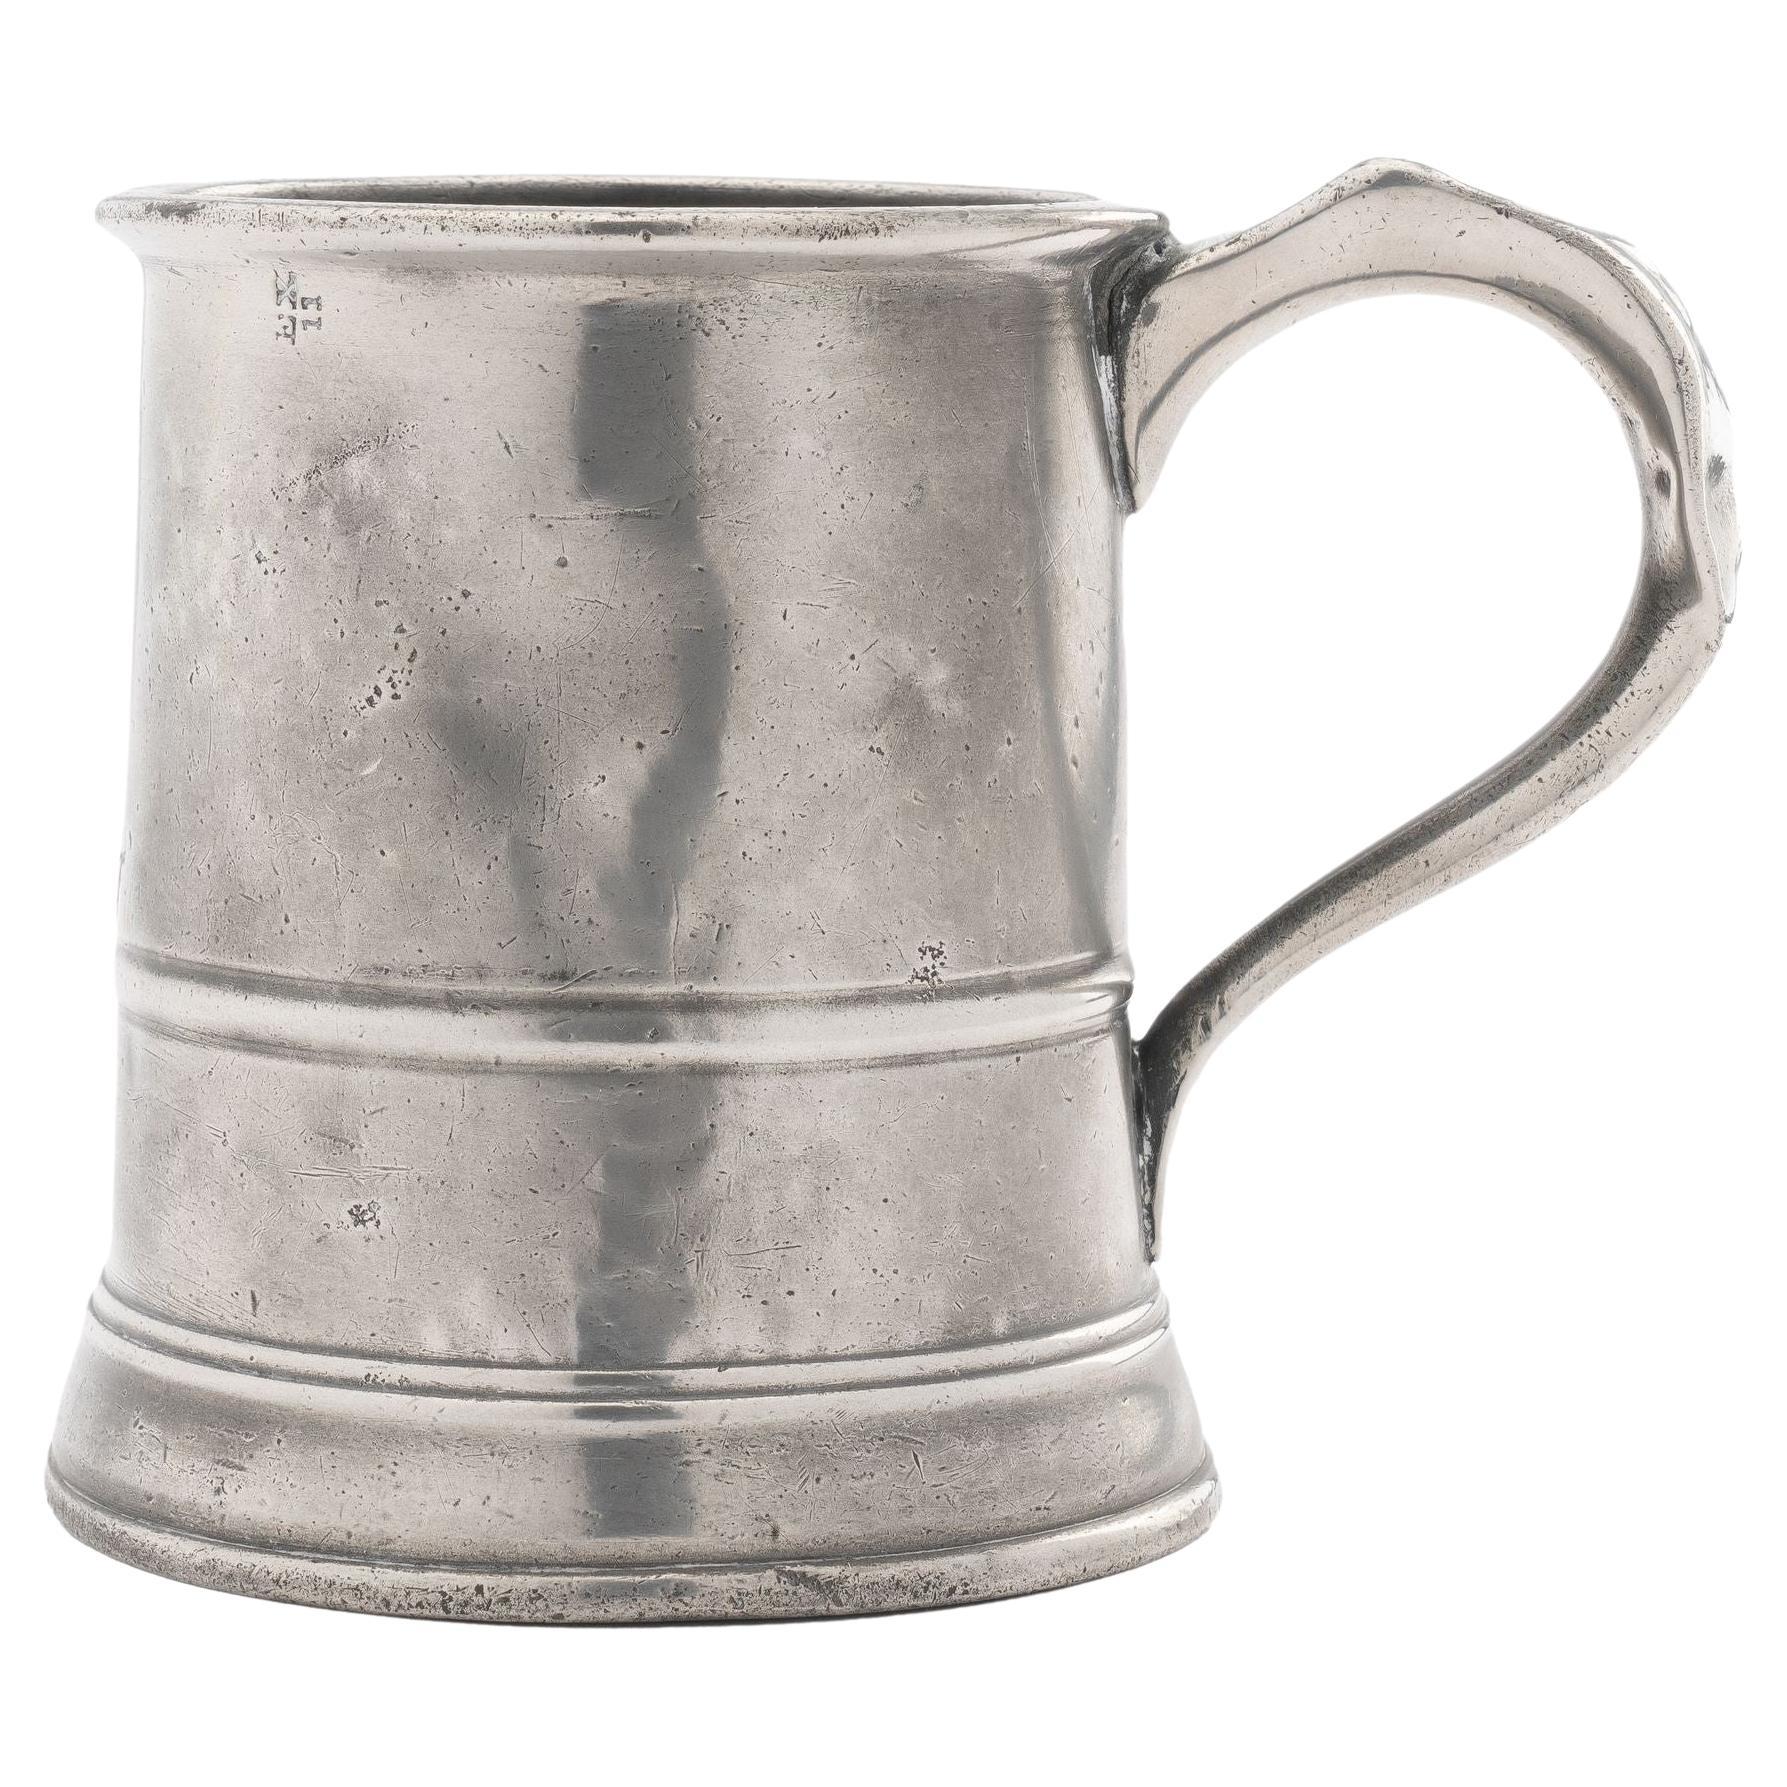 Englischer Pint Mug aus Zinn, 1850er-Jahre